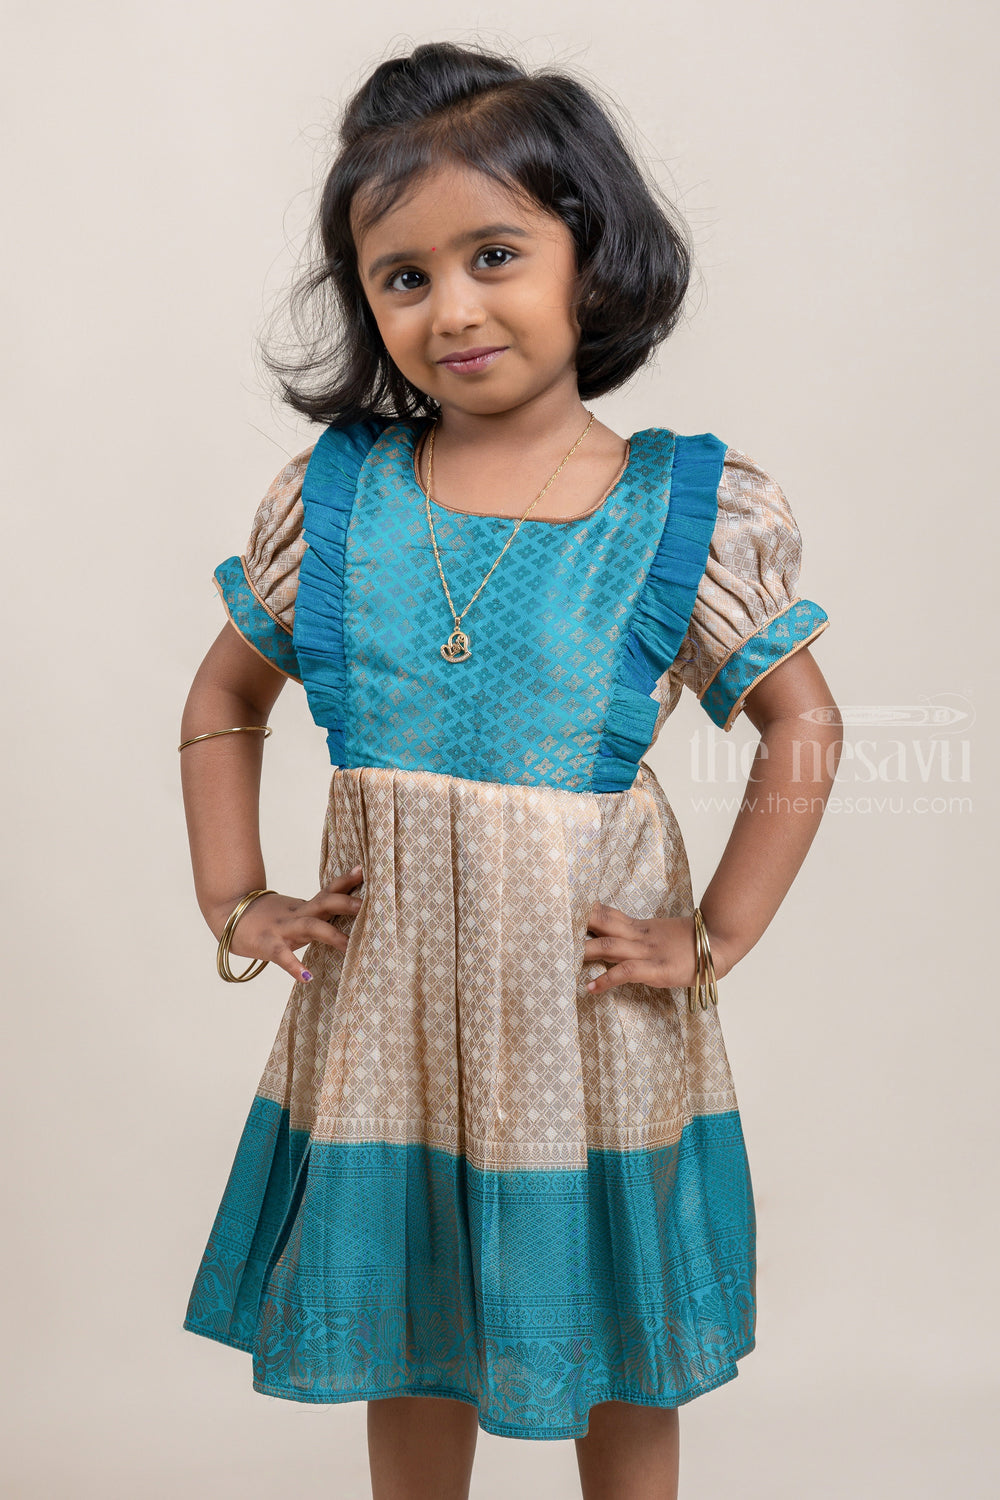 The Nesavu Girls Kanchi Silk Frock Blue with Half White Banarasi Silk Pattu Frock For Kids Girls Nesavu Premium Silk Frock For Girls | Kanchivaram Silk Design | The Nesavu